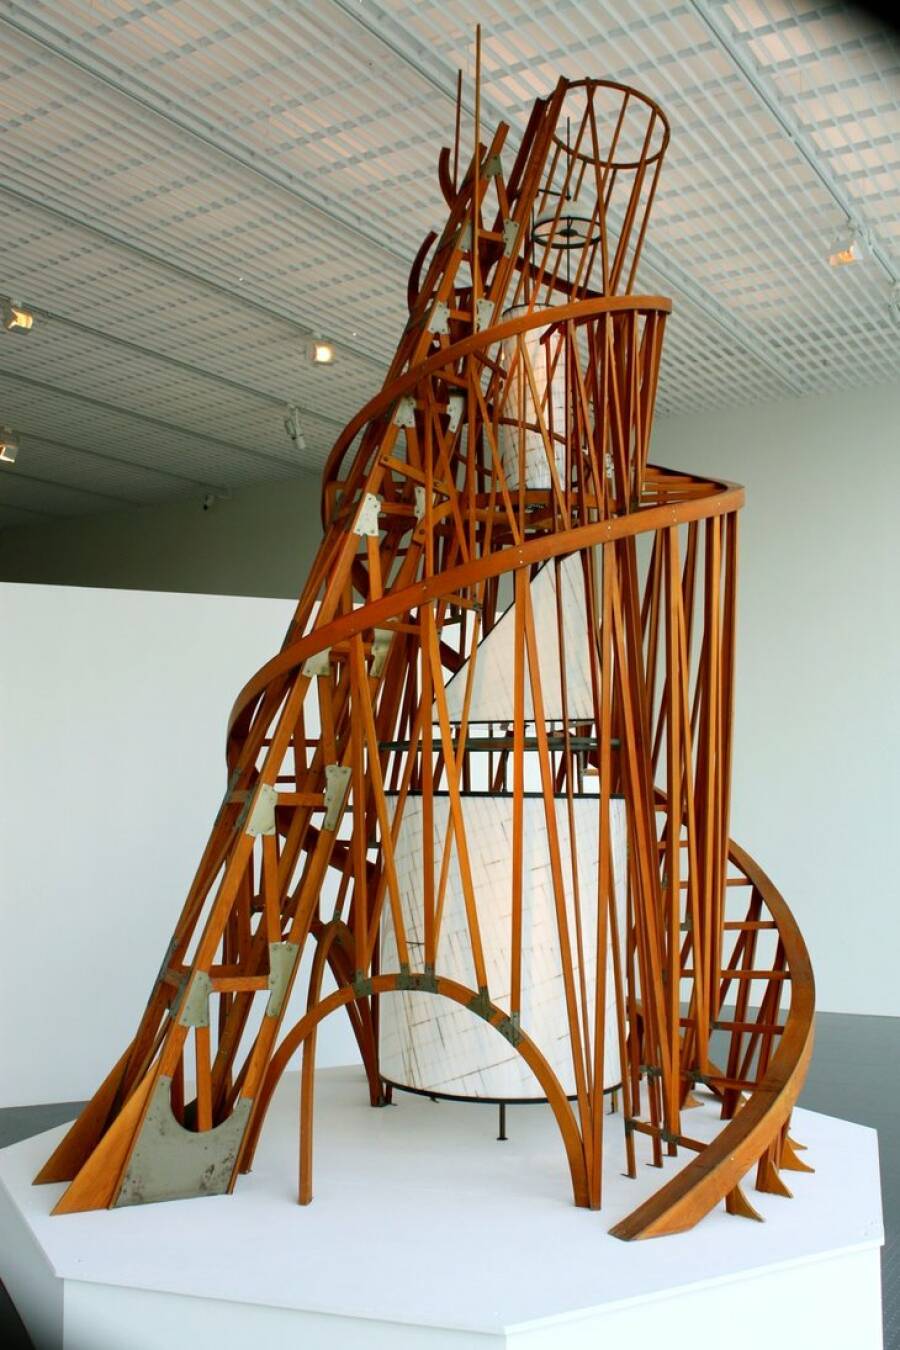 Модель Татлинской башни на выставке